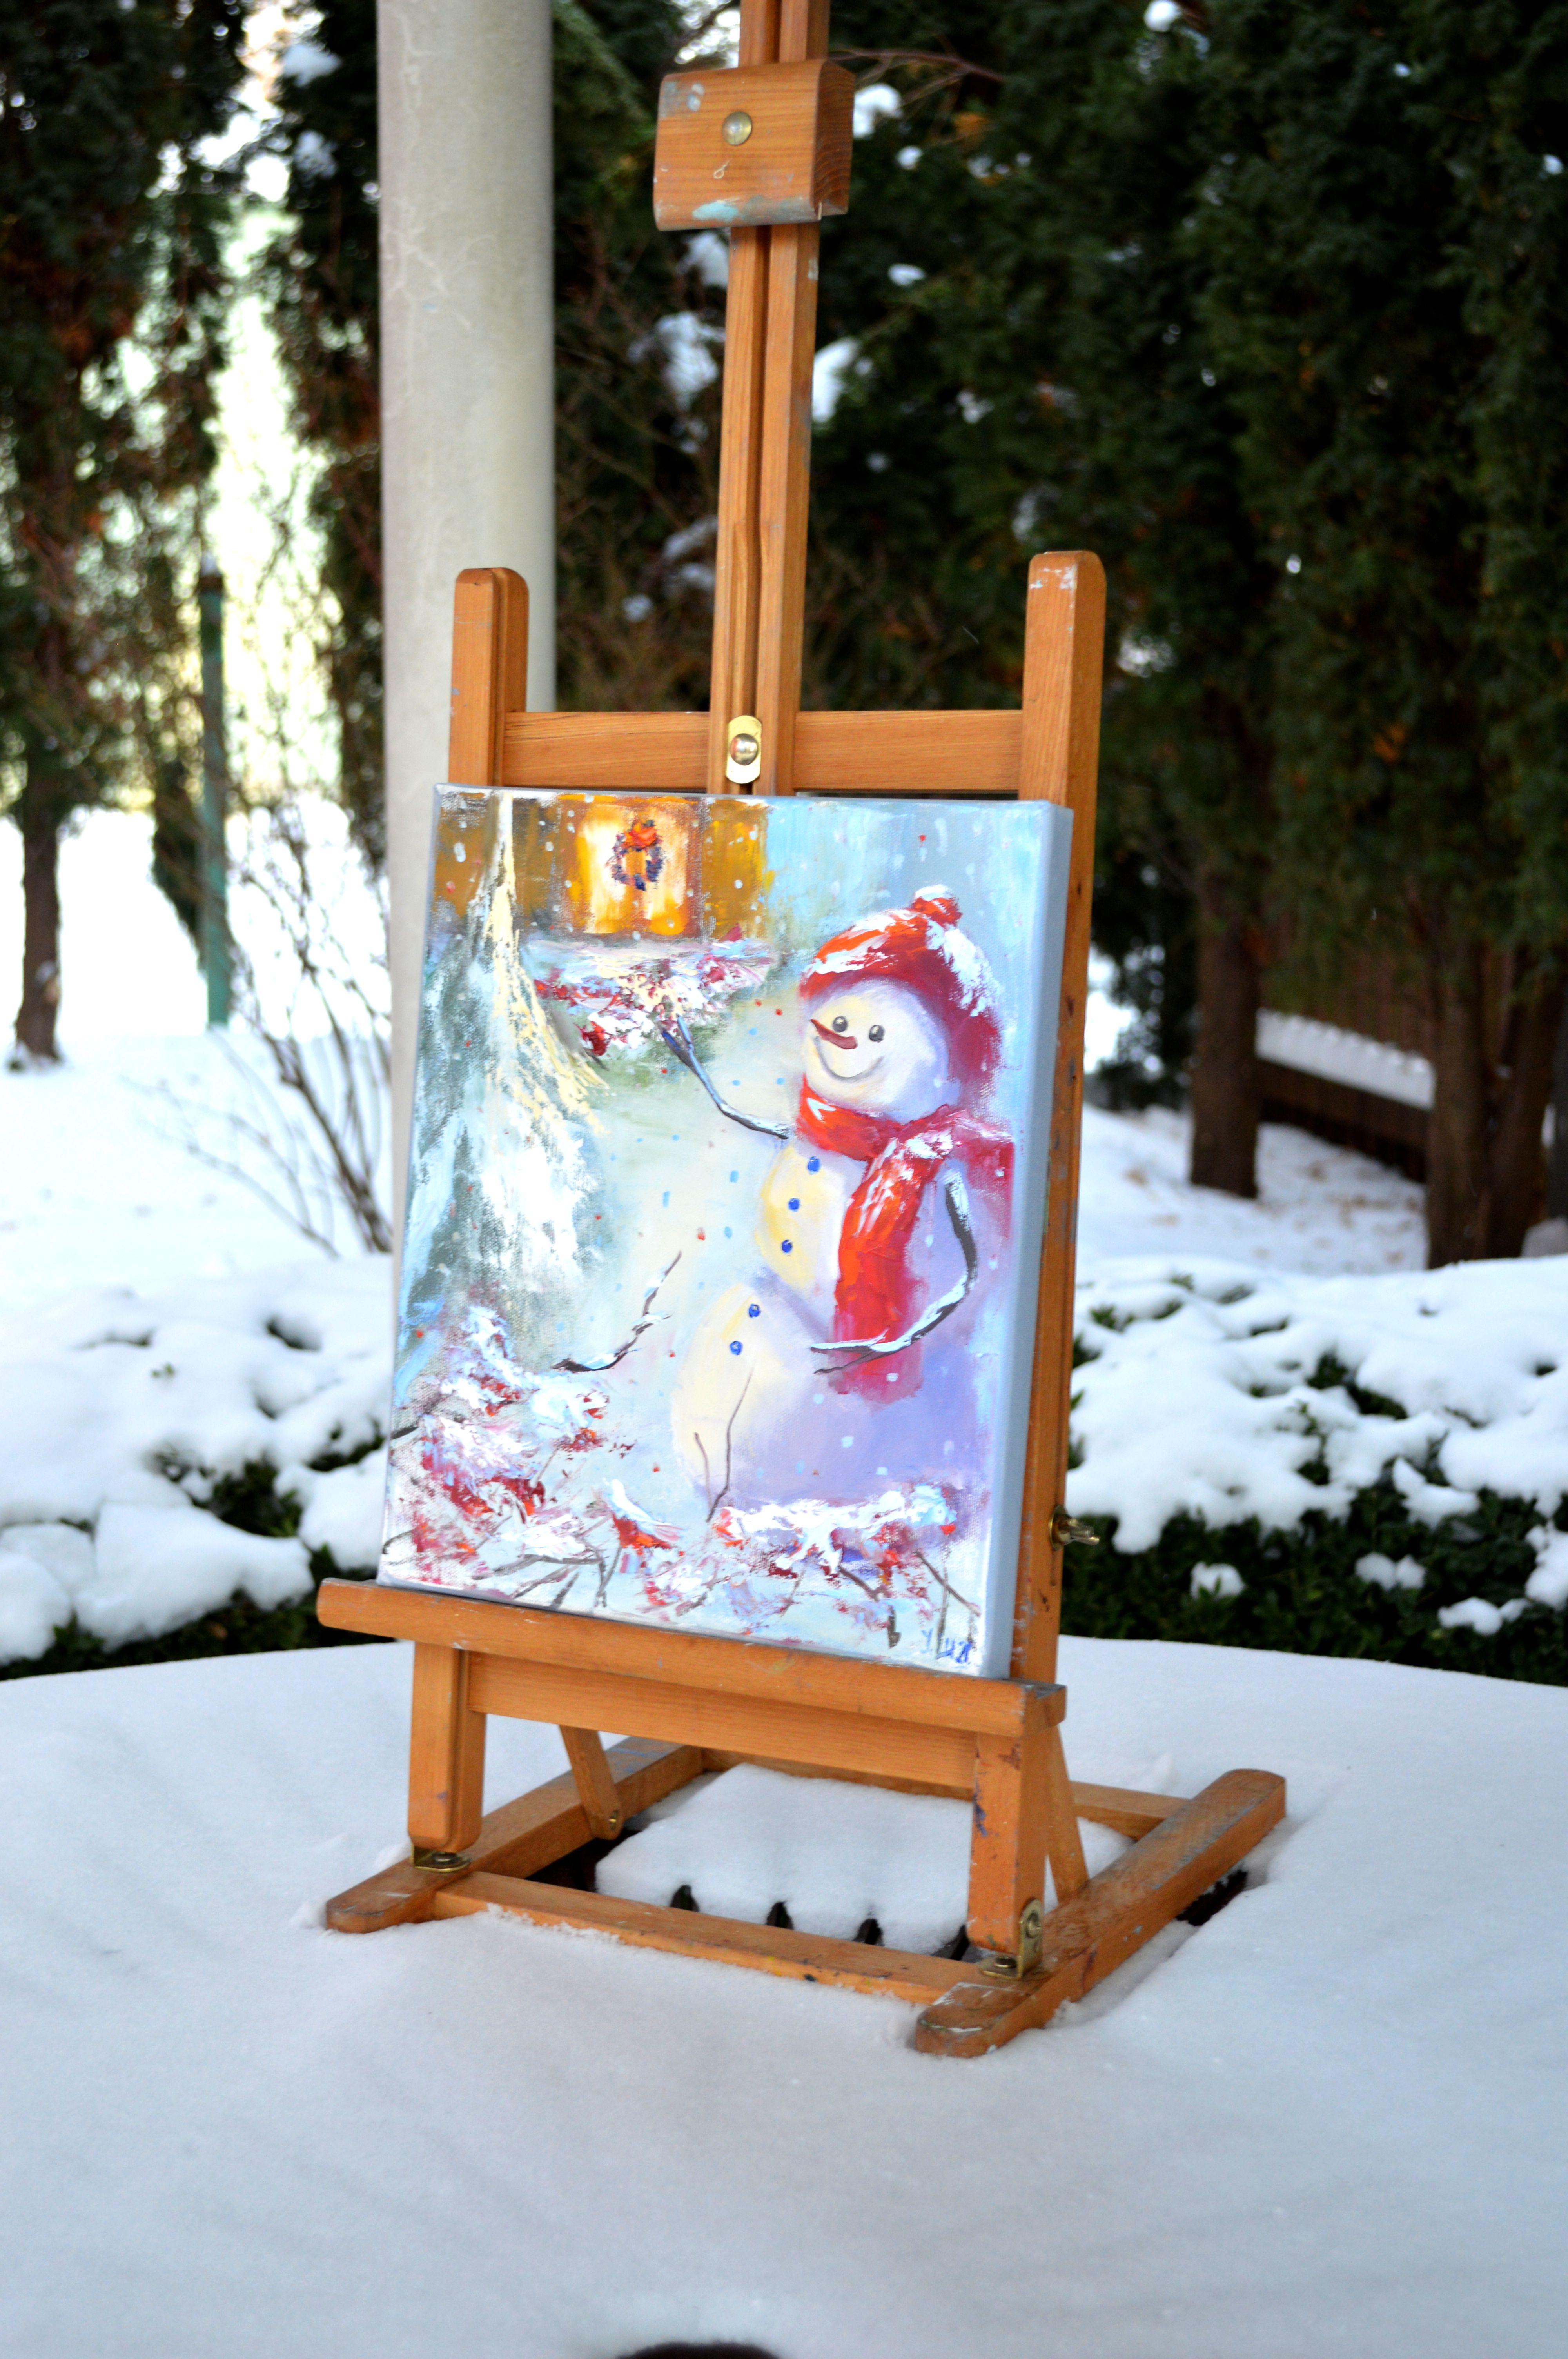 Dans cette peinture à l'huile, j'ai capturé l'essence joyeuse de l'enchantement de l'hiver. Le joyeux bonhomme de neige, paré de vêtements éclatants, incarne la chaleur de la saison face à la fraîcheur du paysage impressionniste. Des mouchetures de